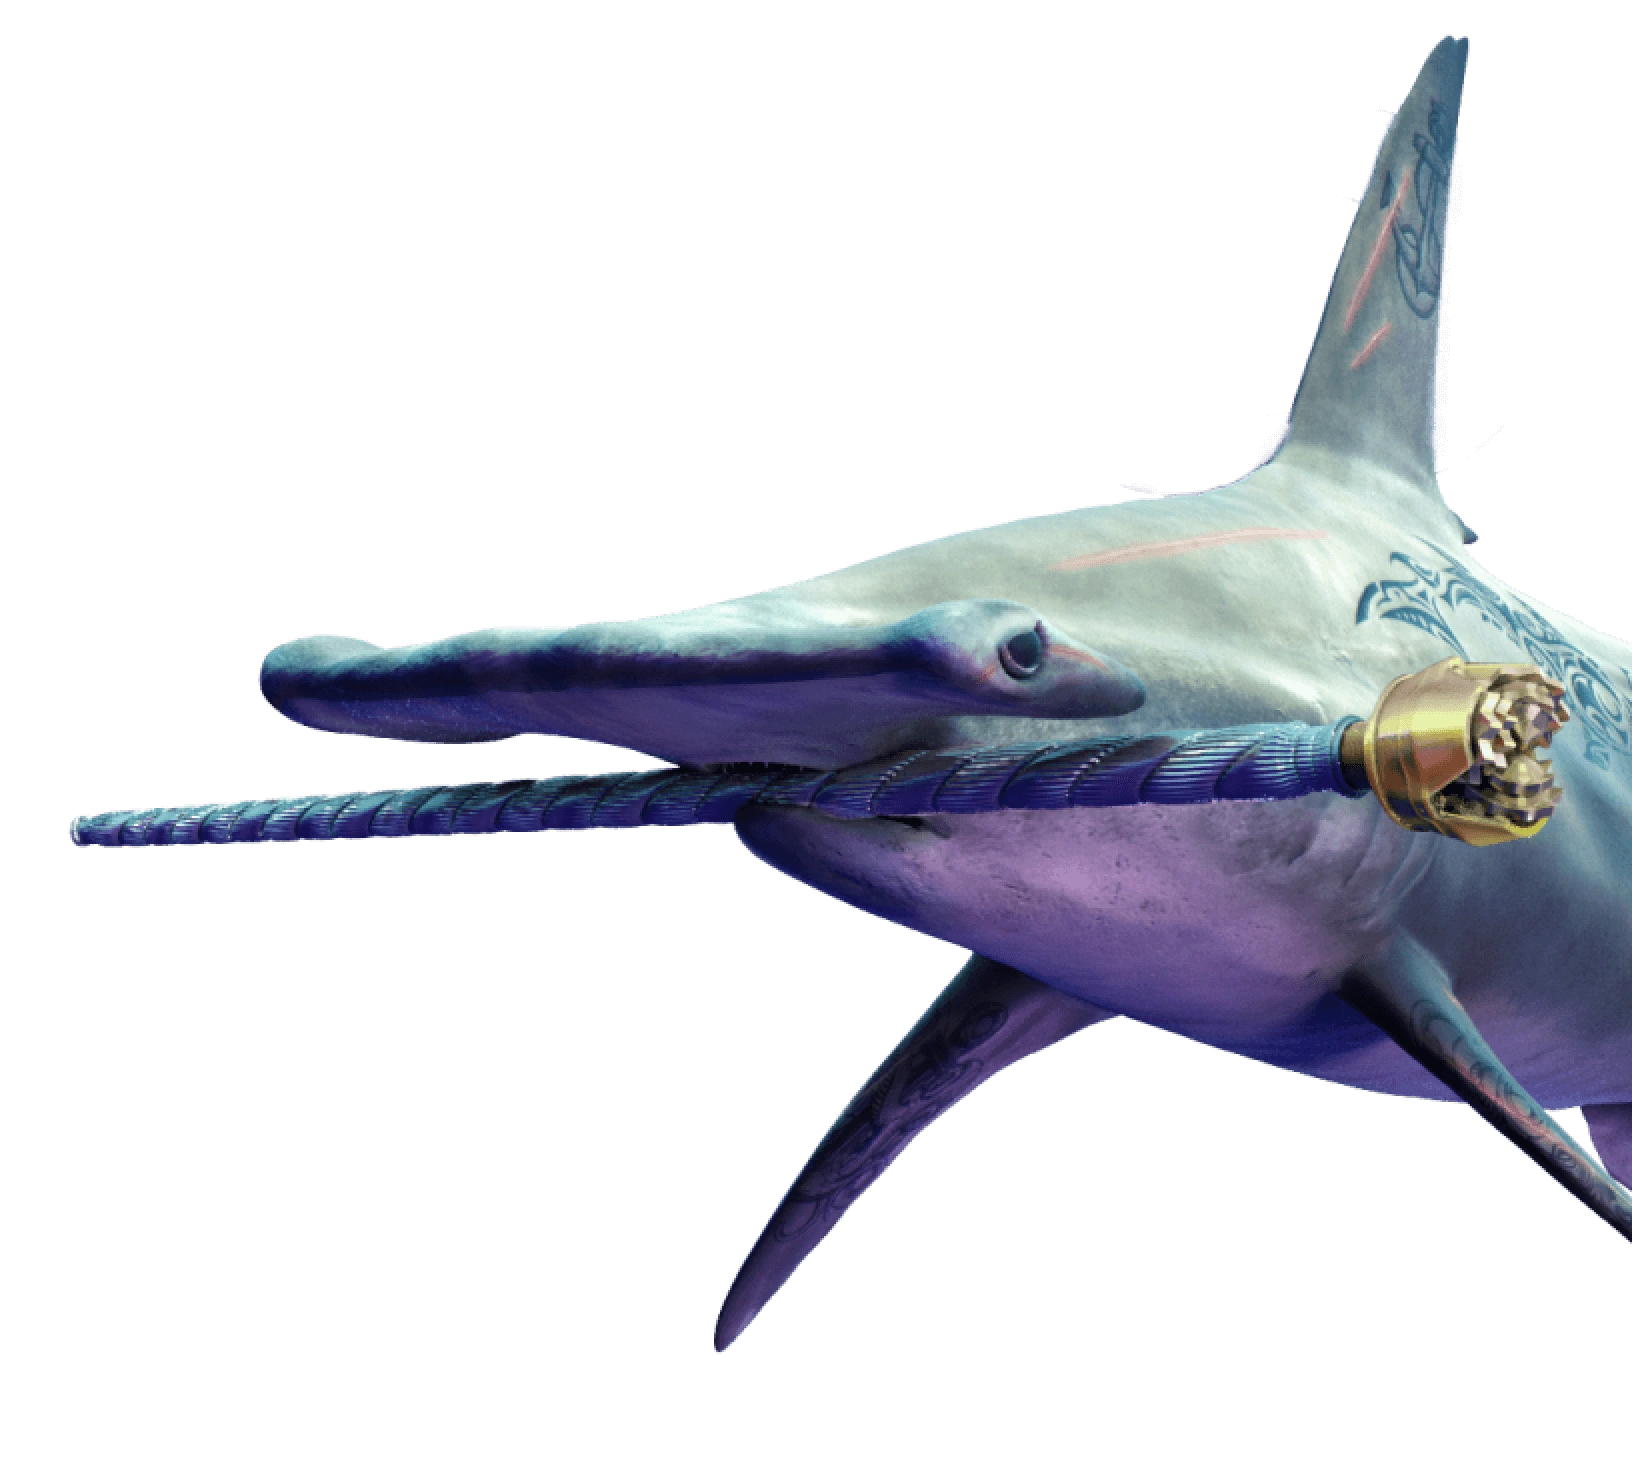 Uma imagem gerada por computador de um grande tubarão martelo azul